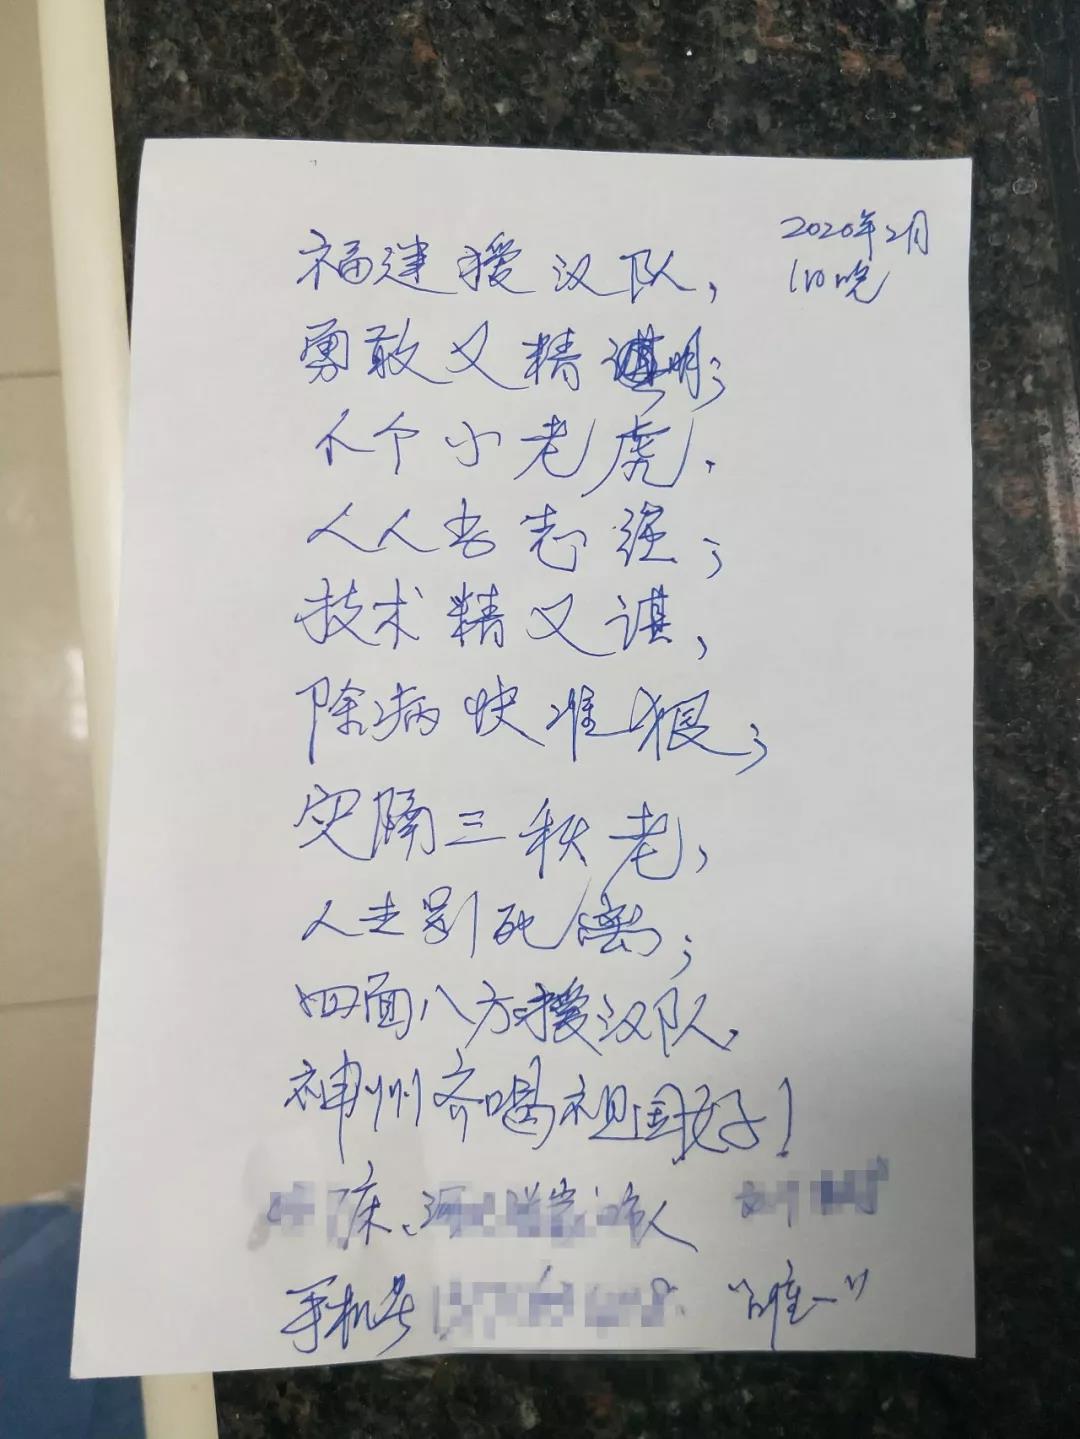 70岁新冠患者为吴灿明及福建救援队写下的感谢诗.jpg